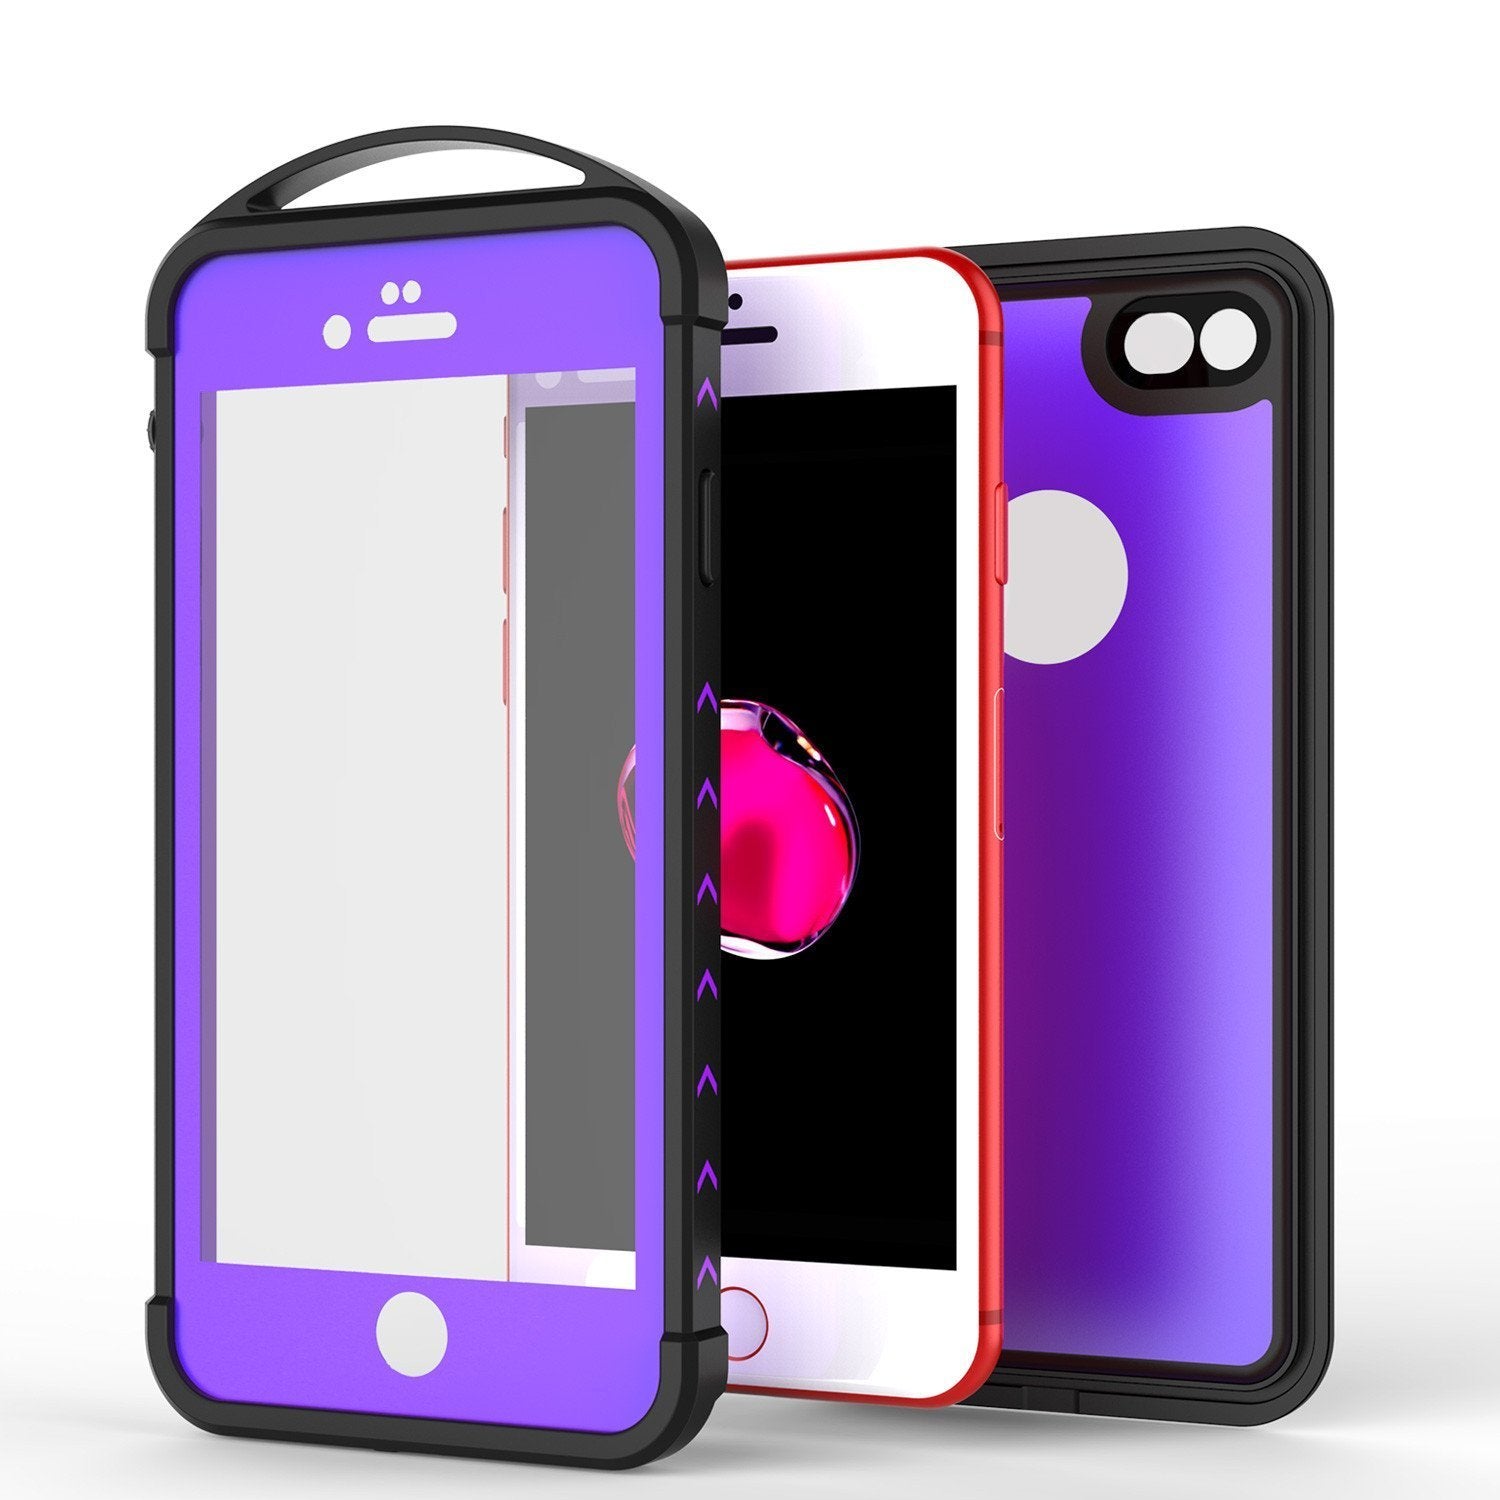 iPhone SE (4.7") Waterproof Case, Punkcase ALPINE Series, Purple | Heavy Duty Armor Cover